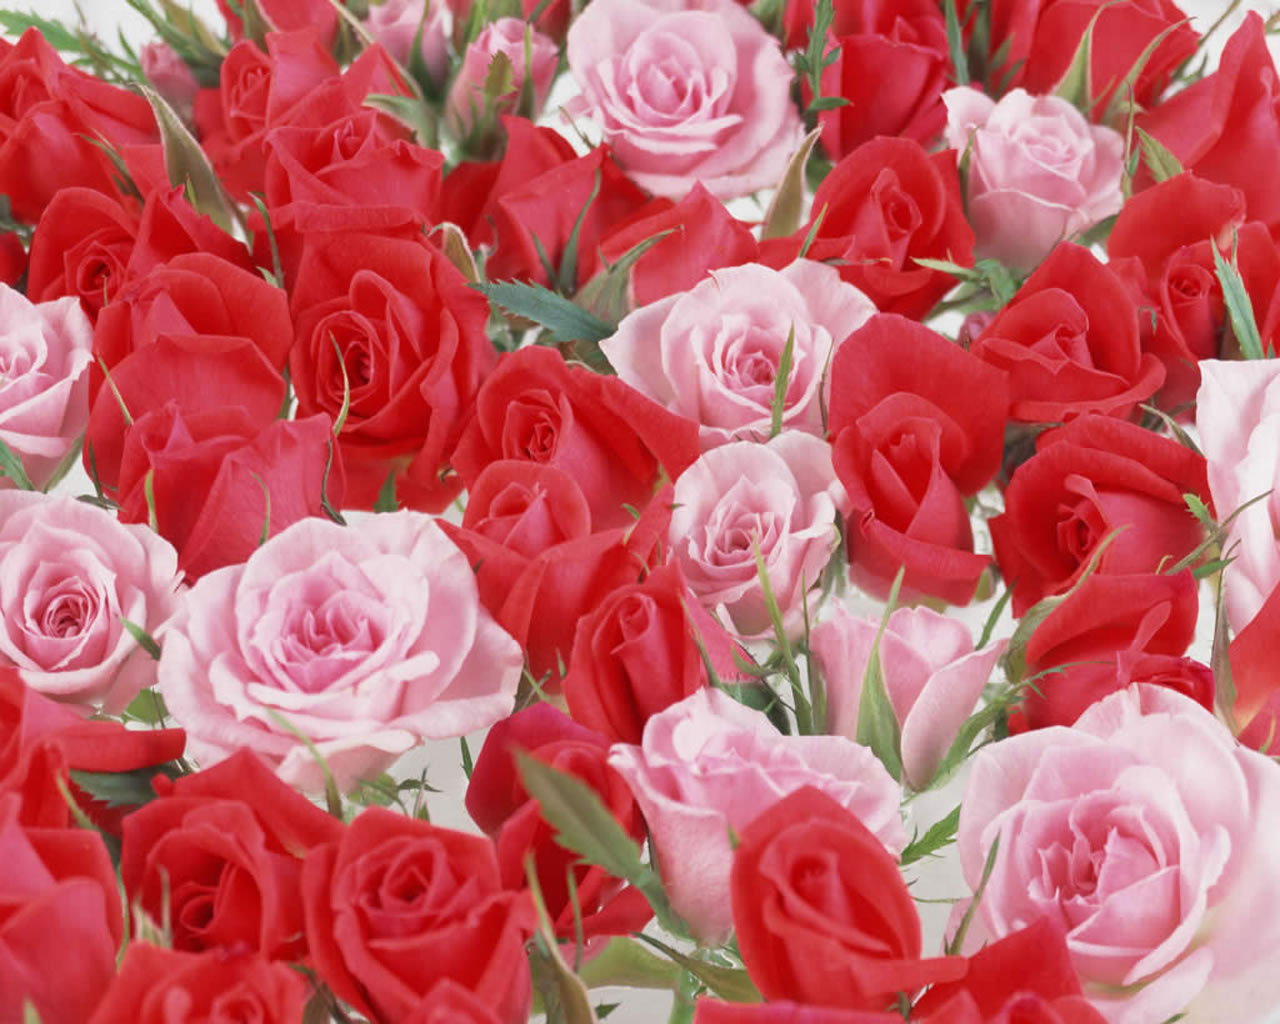 50+] Most Beautiful Rose Flowers Wallpapers - WallpaperSafari